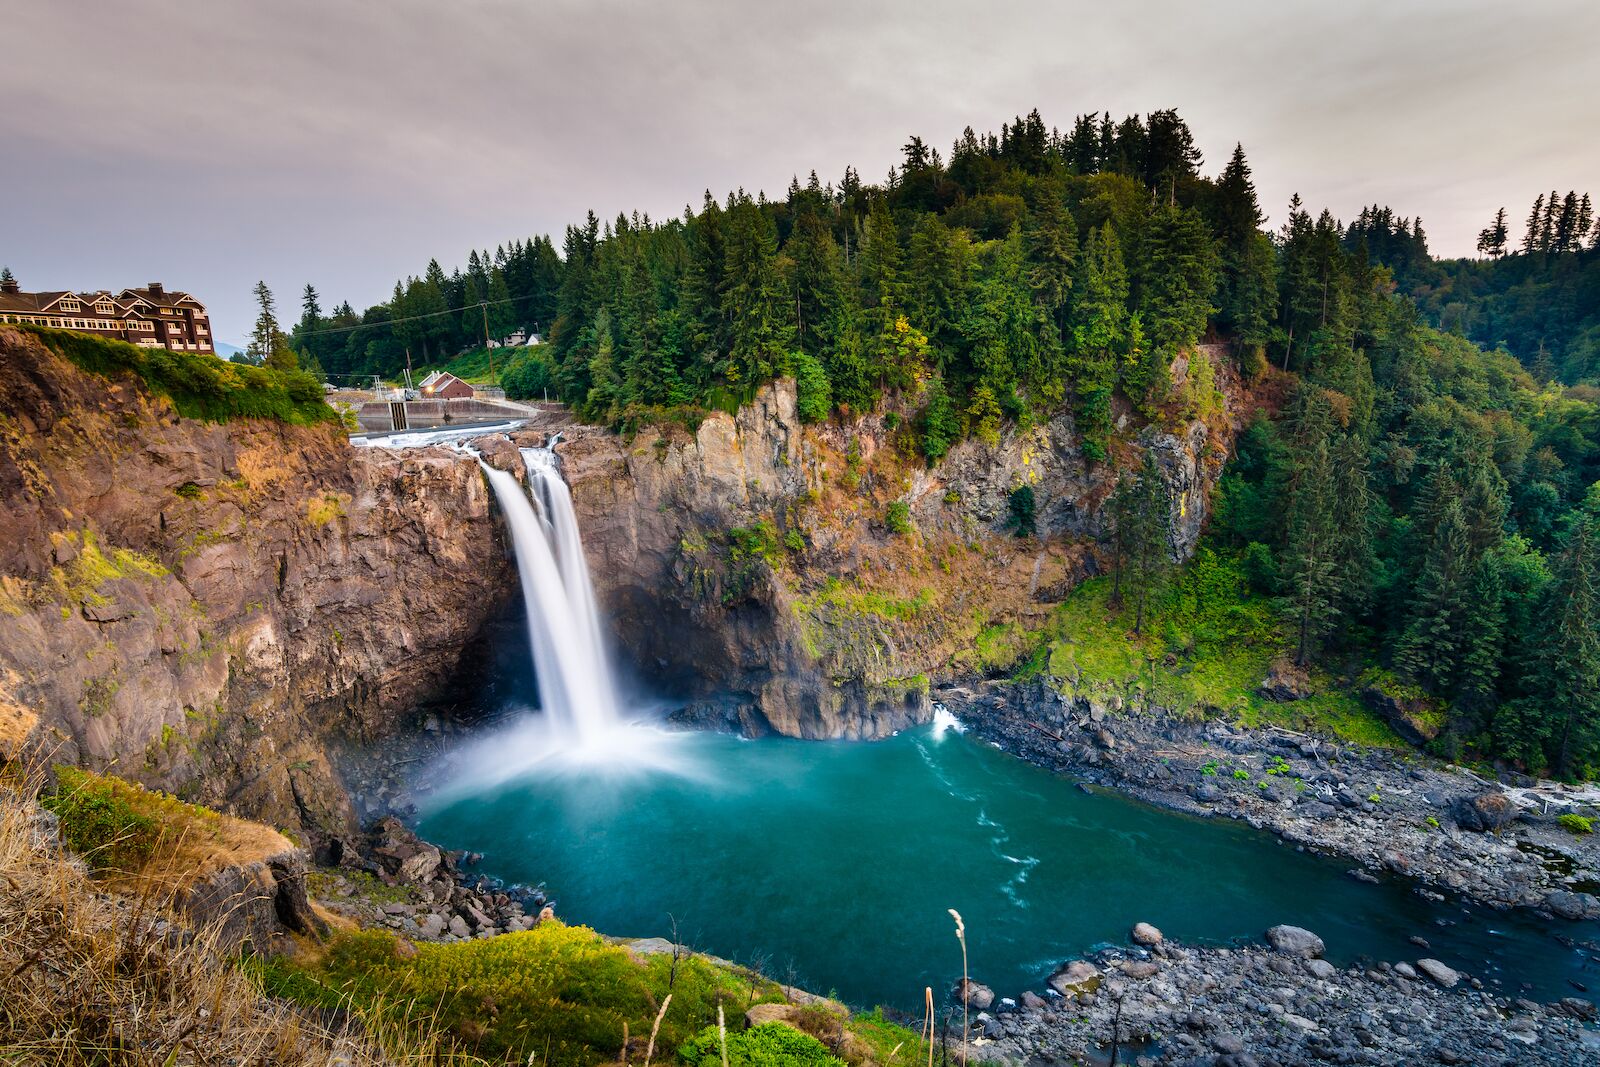 waterfalls near seattle - most famous